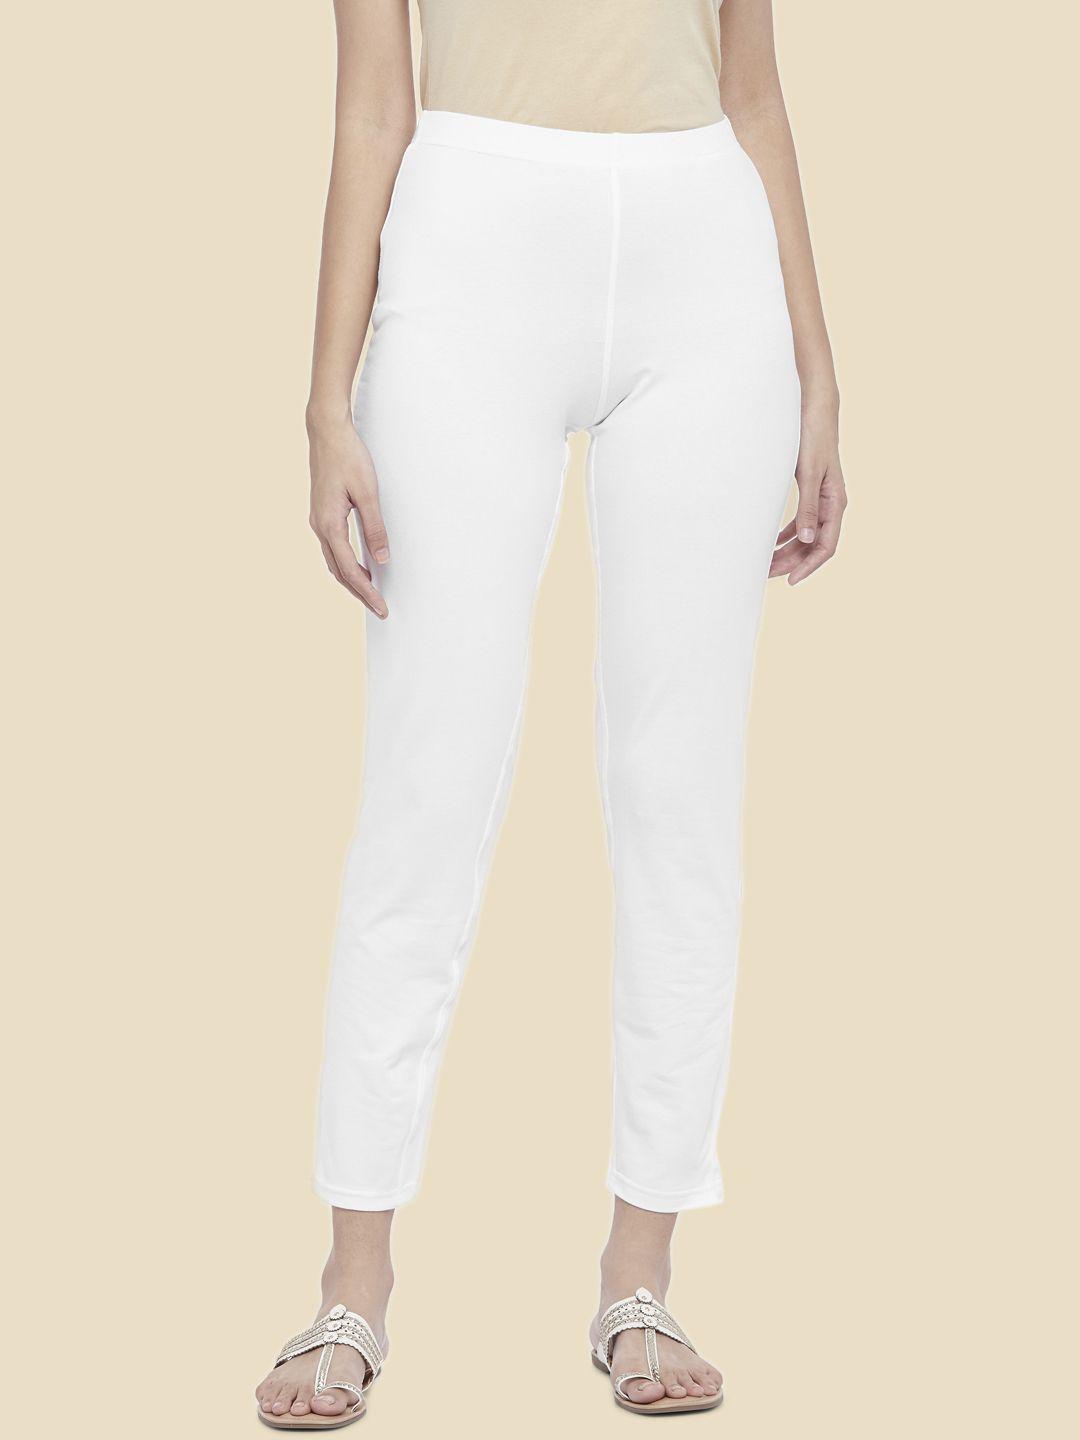 rangmanch by pantaloons women white culottes trousers